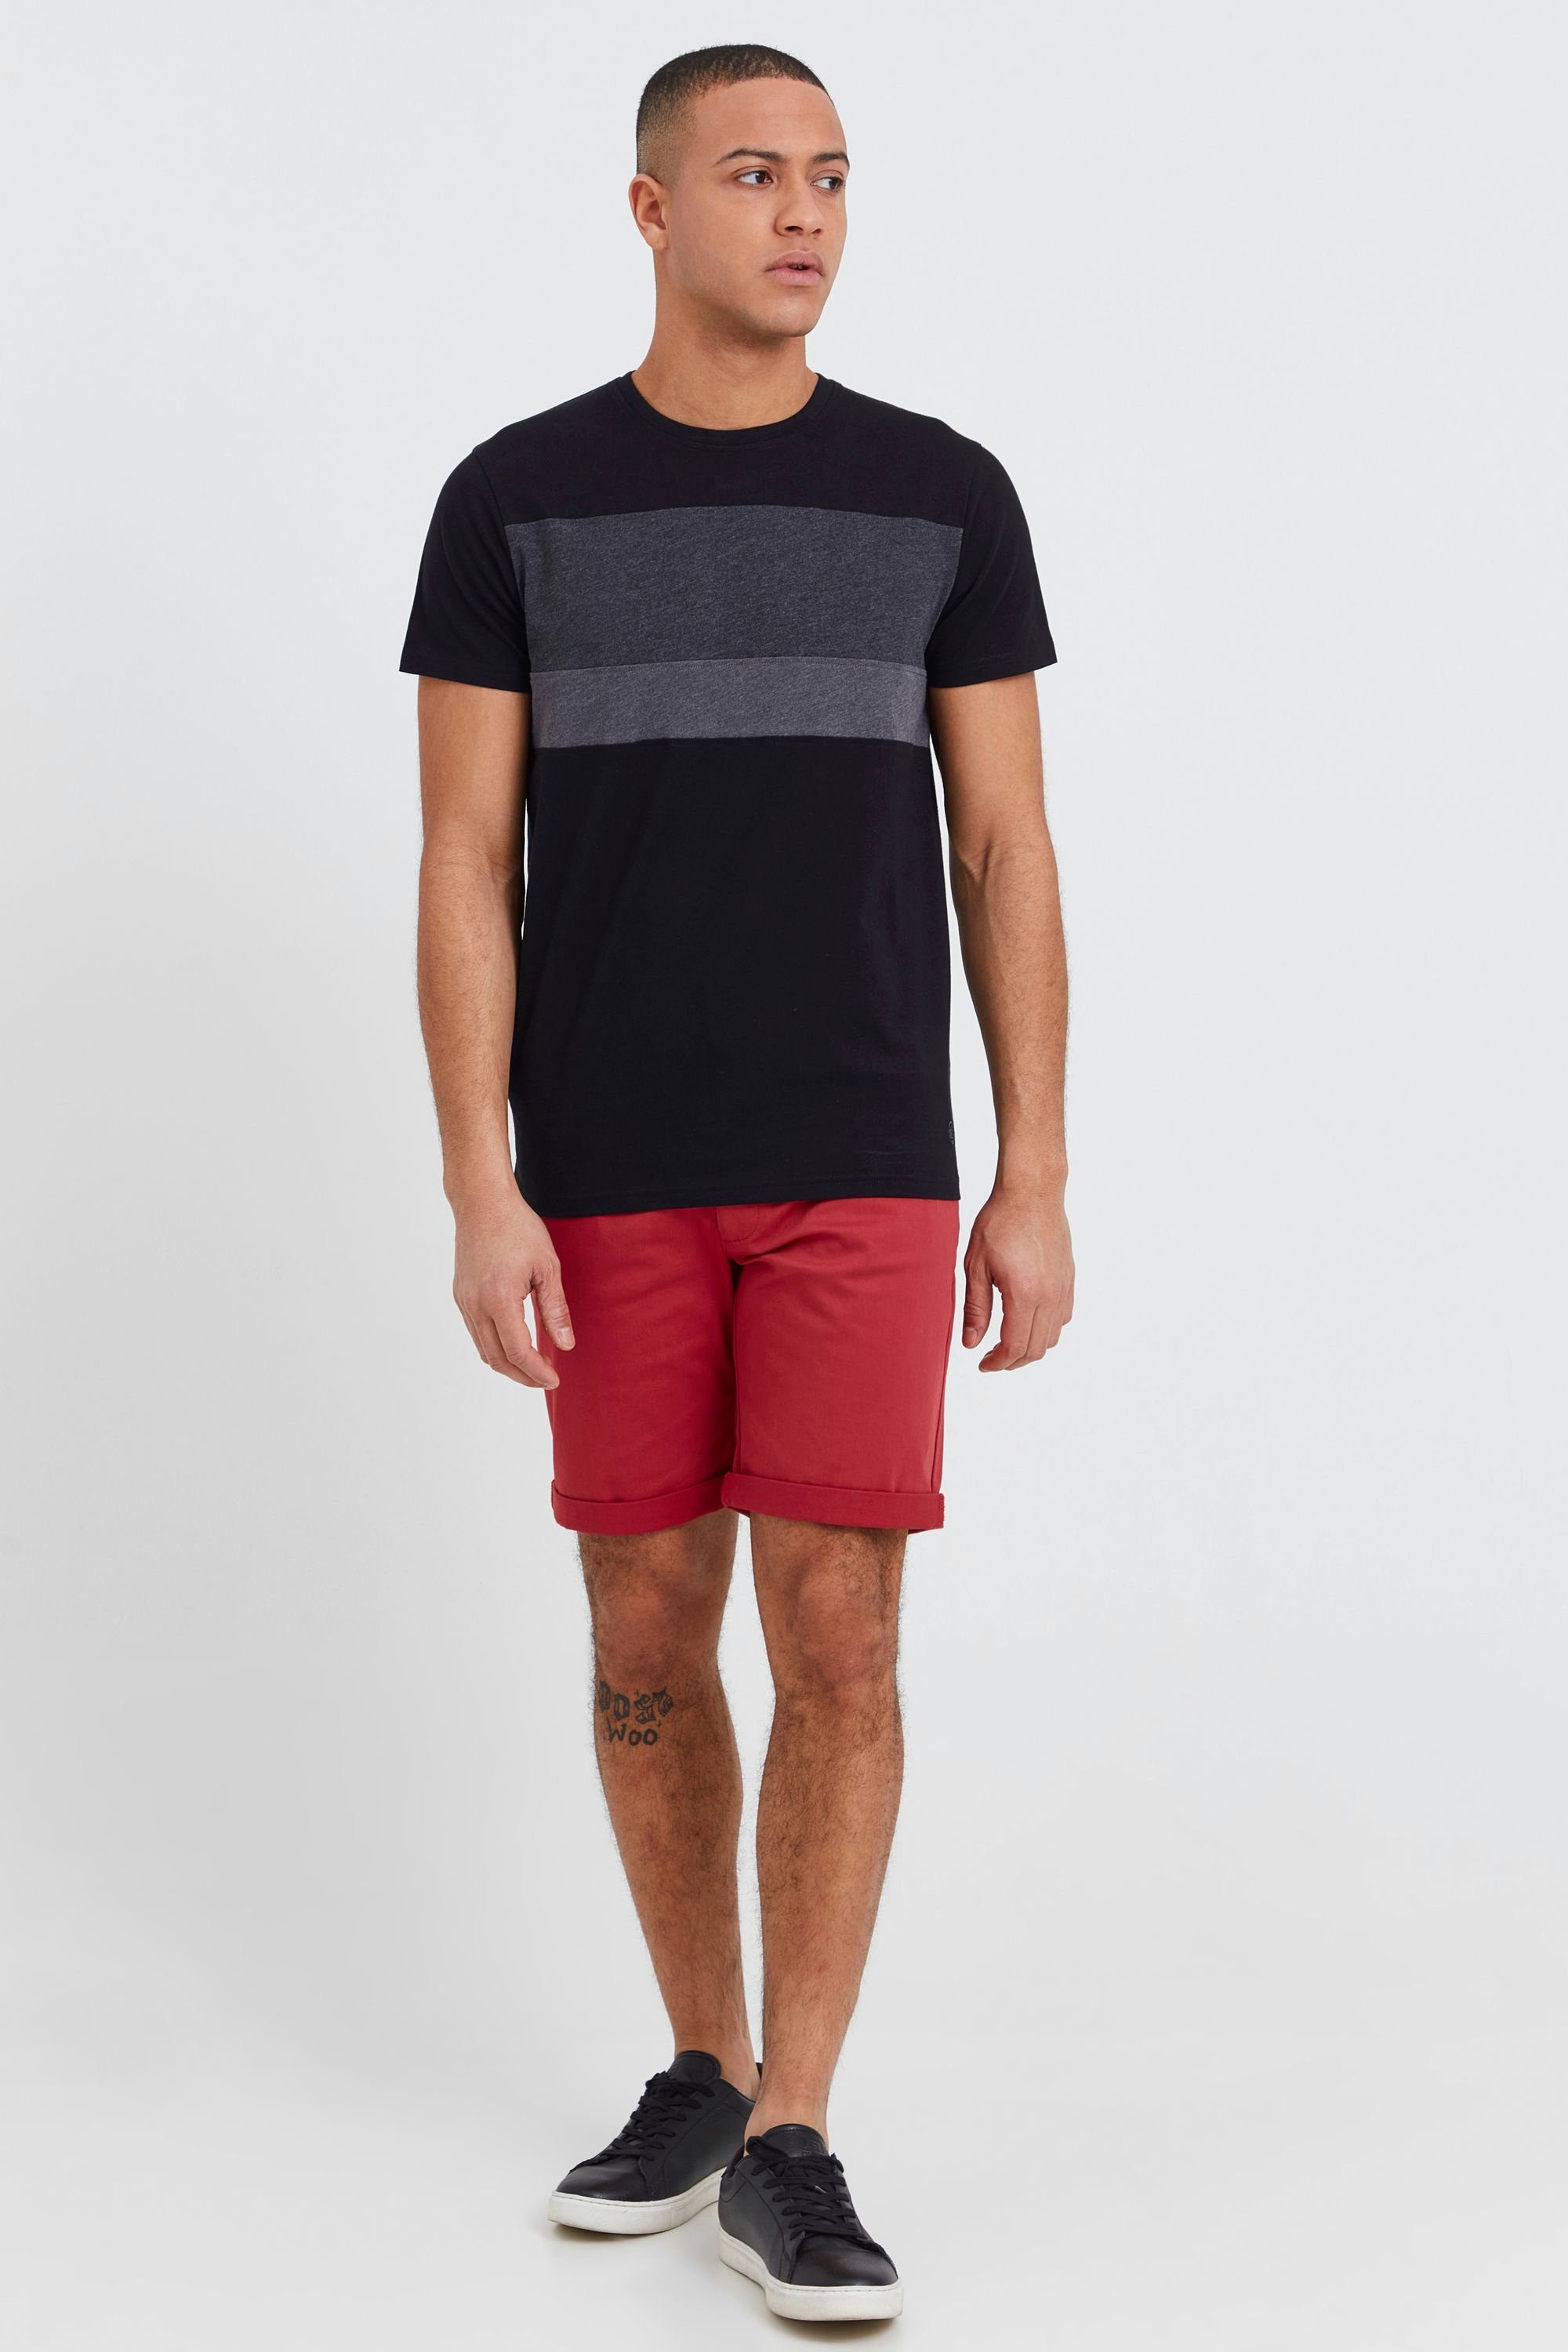 SDSascha Tricolor Streifenoptik Black T-Shirt !Solid in (9000) Rundhalsshirt